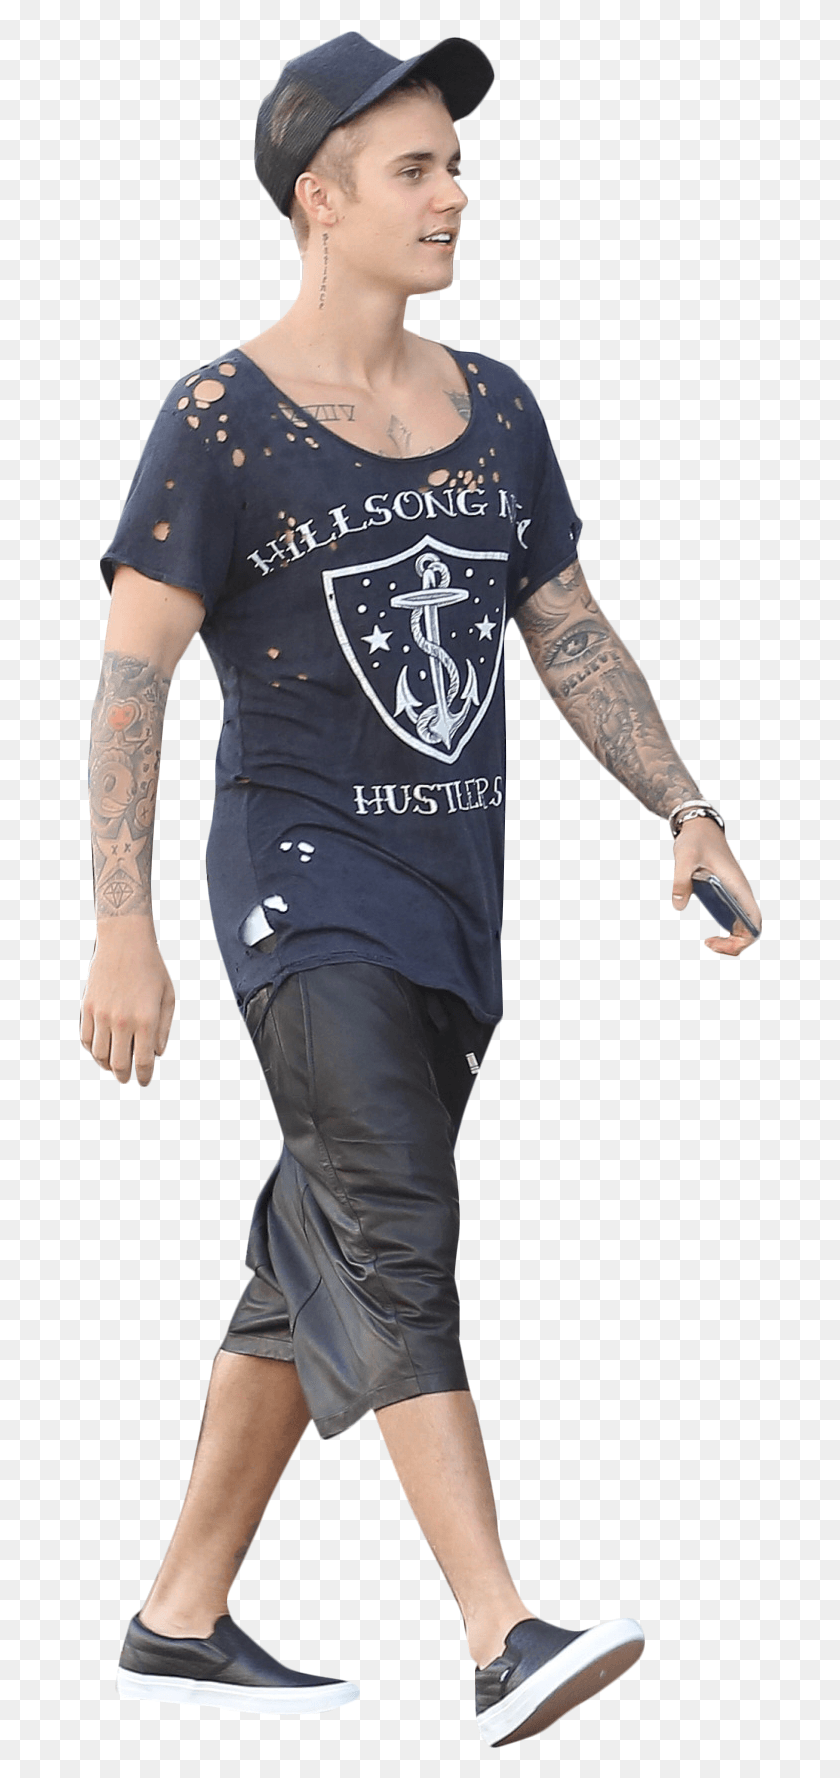 684x1718 Justin Bieber Caminando Imagen Gente Caminando Fondo Transparente, Piel, Ropa, Vestimenta Hd Png